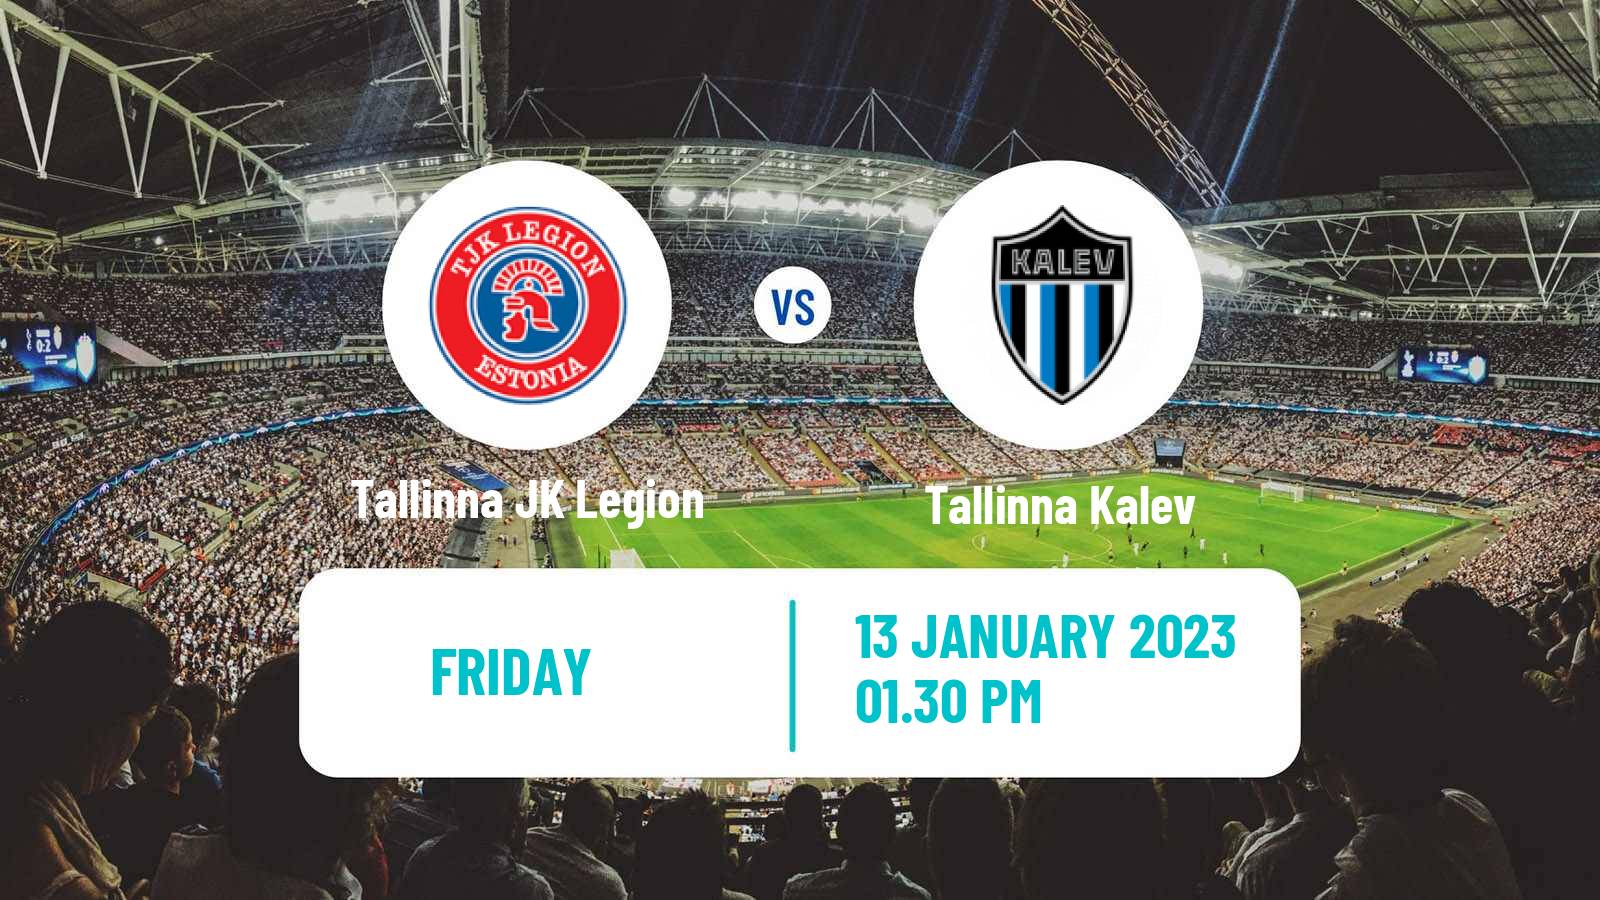 Soccer Club Friendly Tallinna JK Legion - Tallinna Kalev